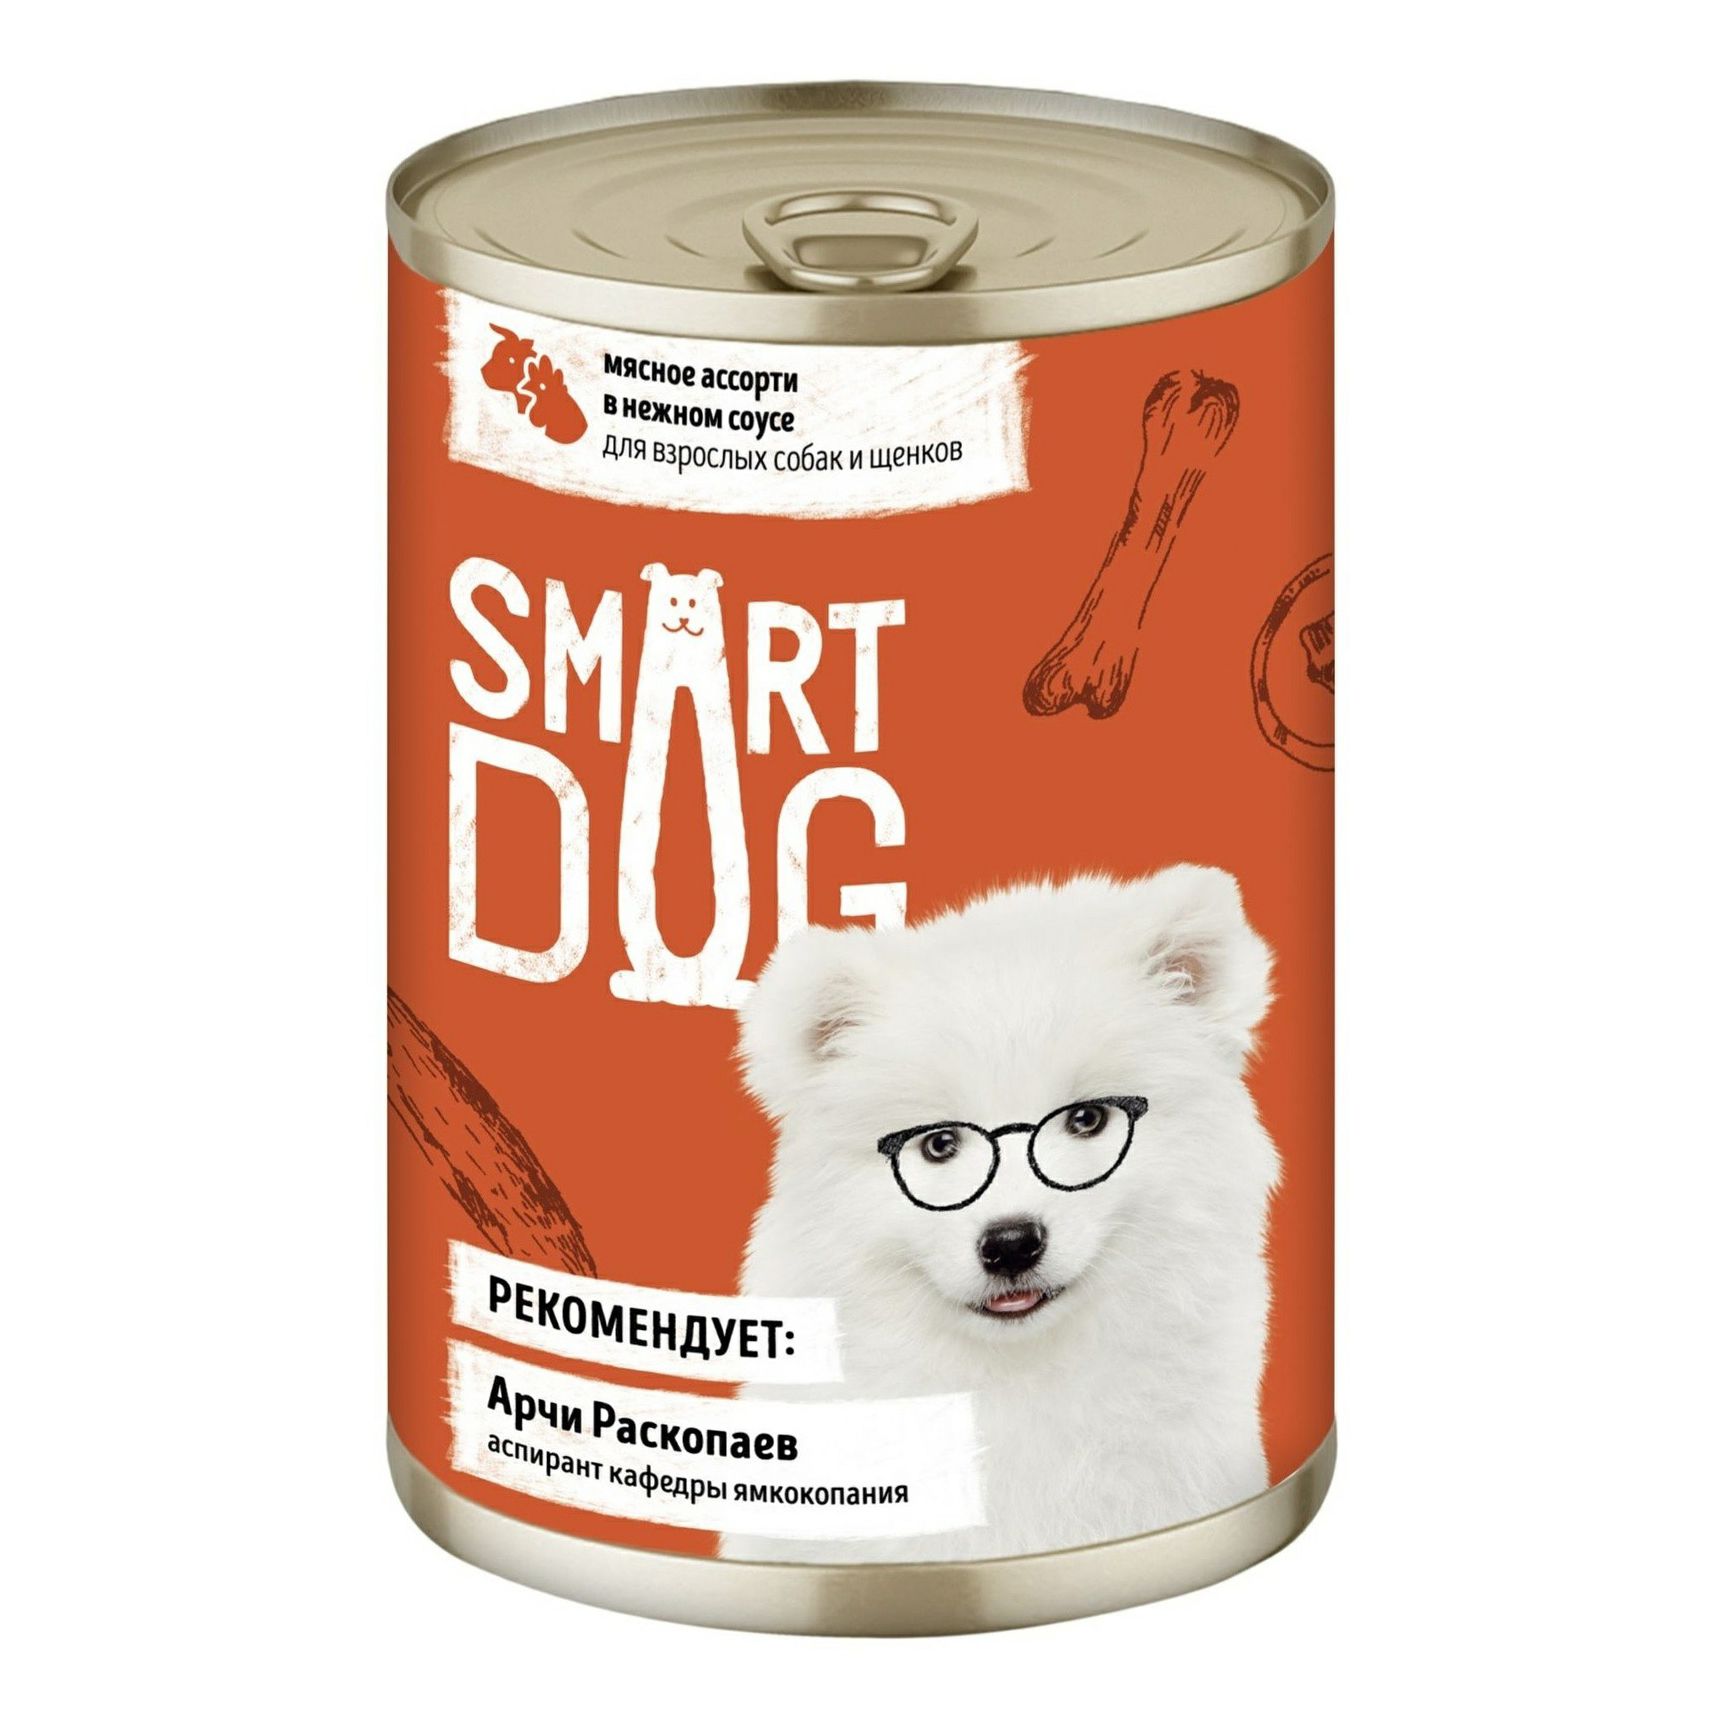 Влажный корм Smart Dog мясное ассорти в нежном соусе для взрослых собак и щенков 850 г